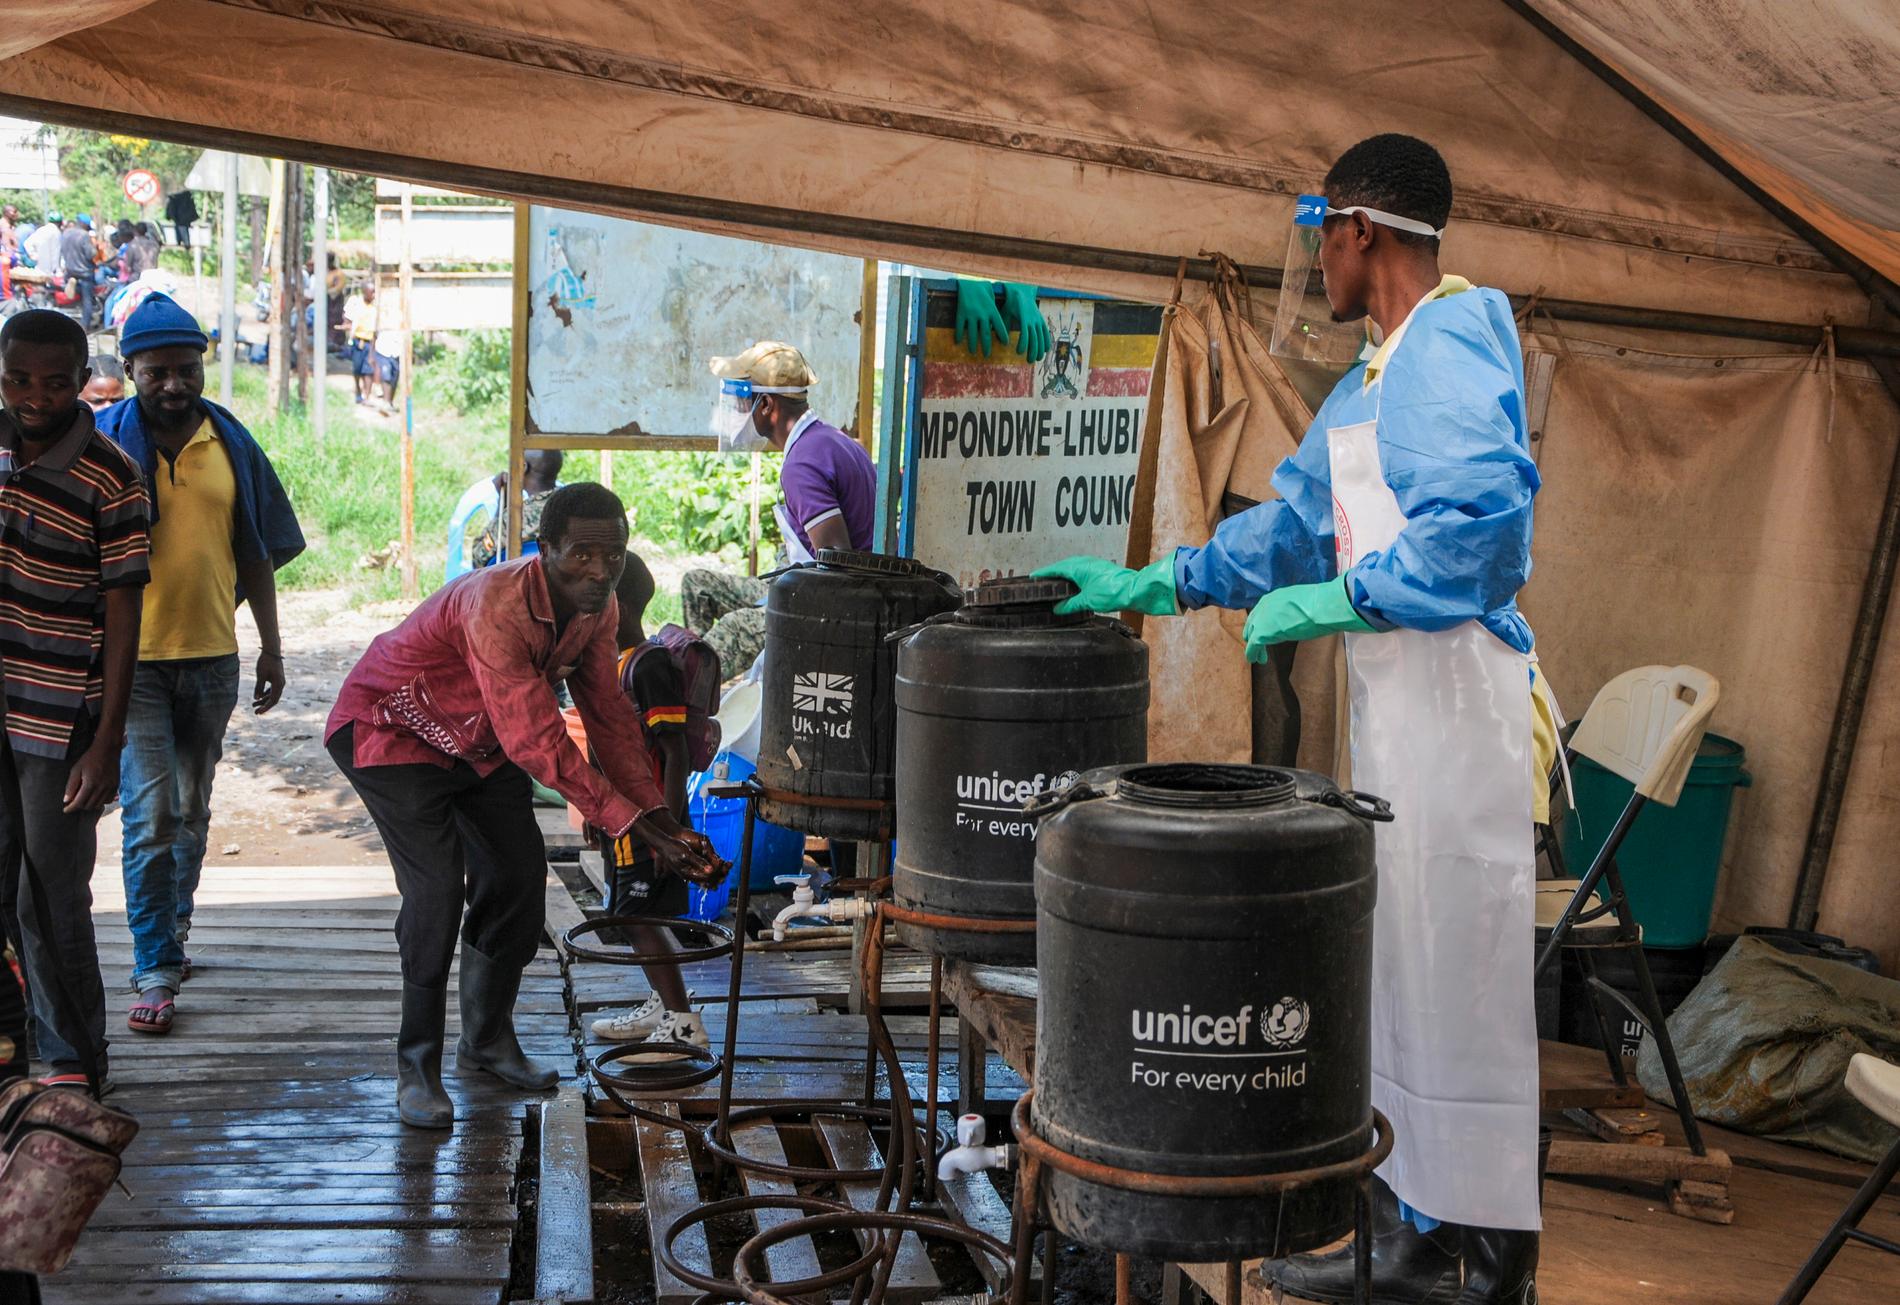 Människor som går över gränsen mellan Kongo-Kinshasa och Uganda manas tvätta händerna i klorerat vatten för att stoppa spridningen av den fruktade sjukdomen ebola.